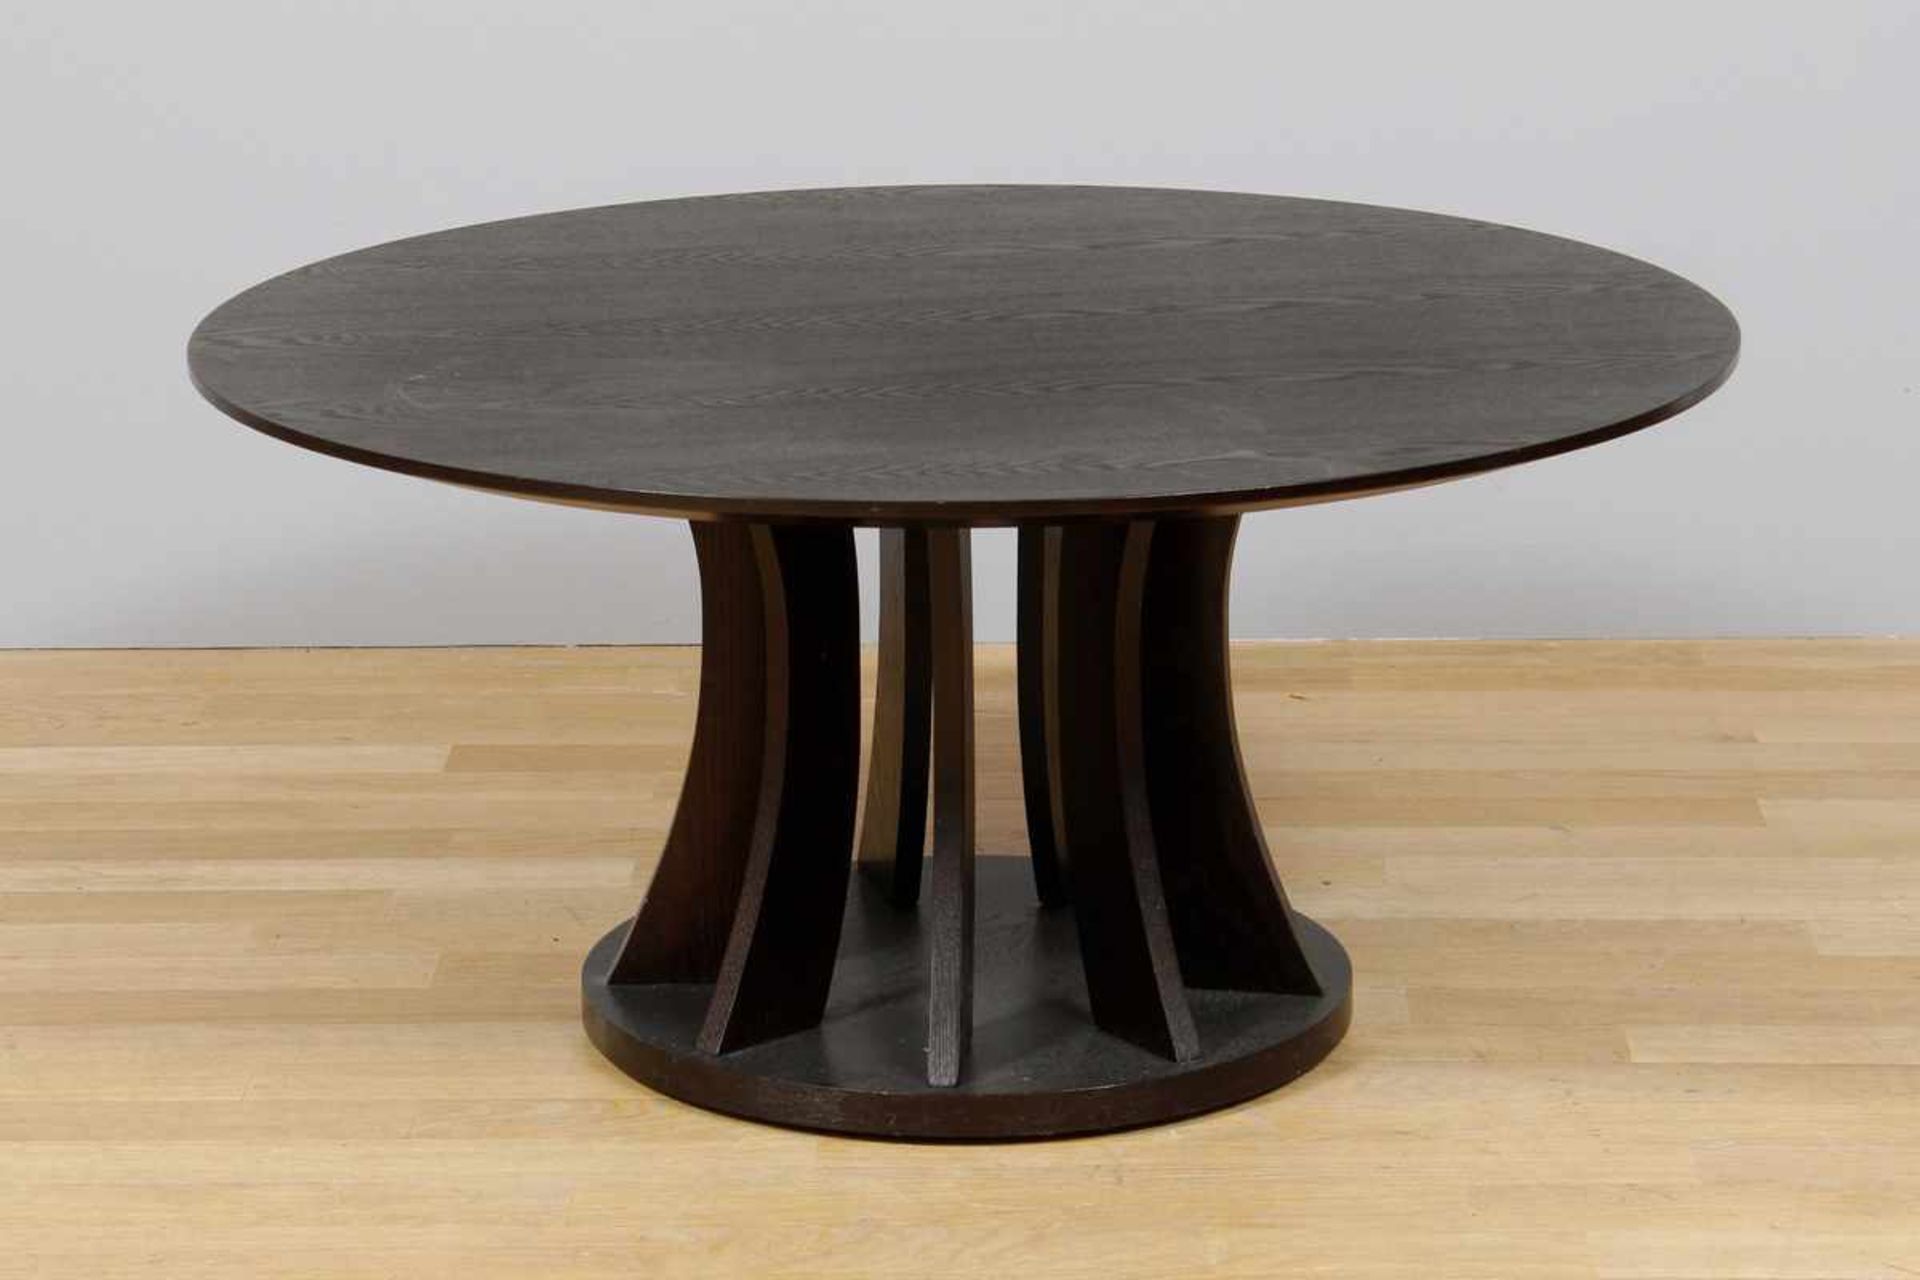 FLAMANT Tisch Wenge, geschwärzt, runde Platte auf offenem Stand mit gerundeten Streben, runde